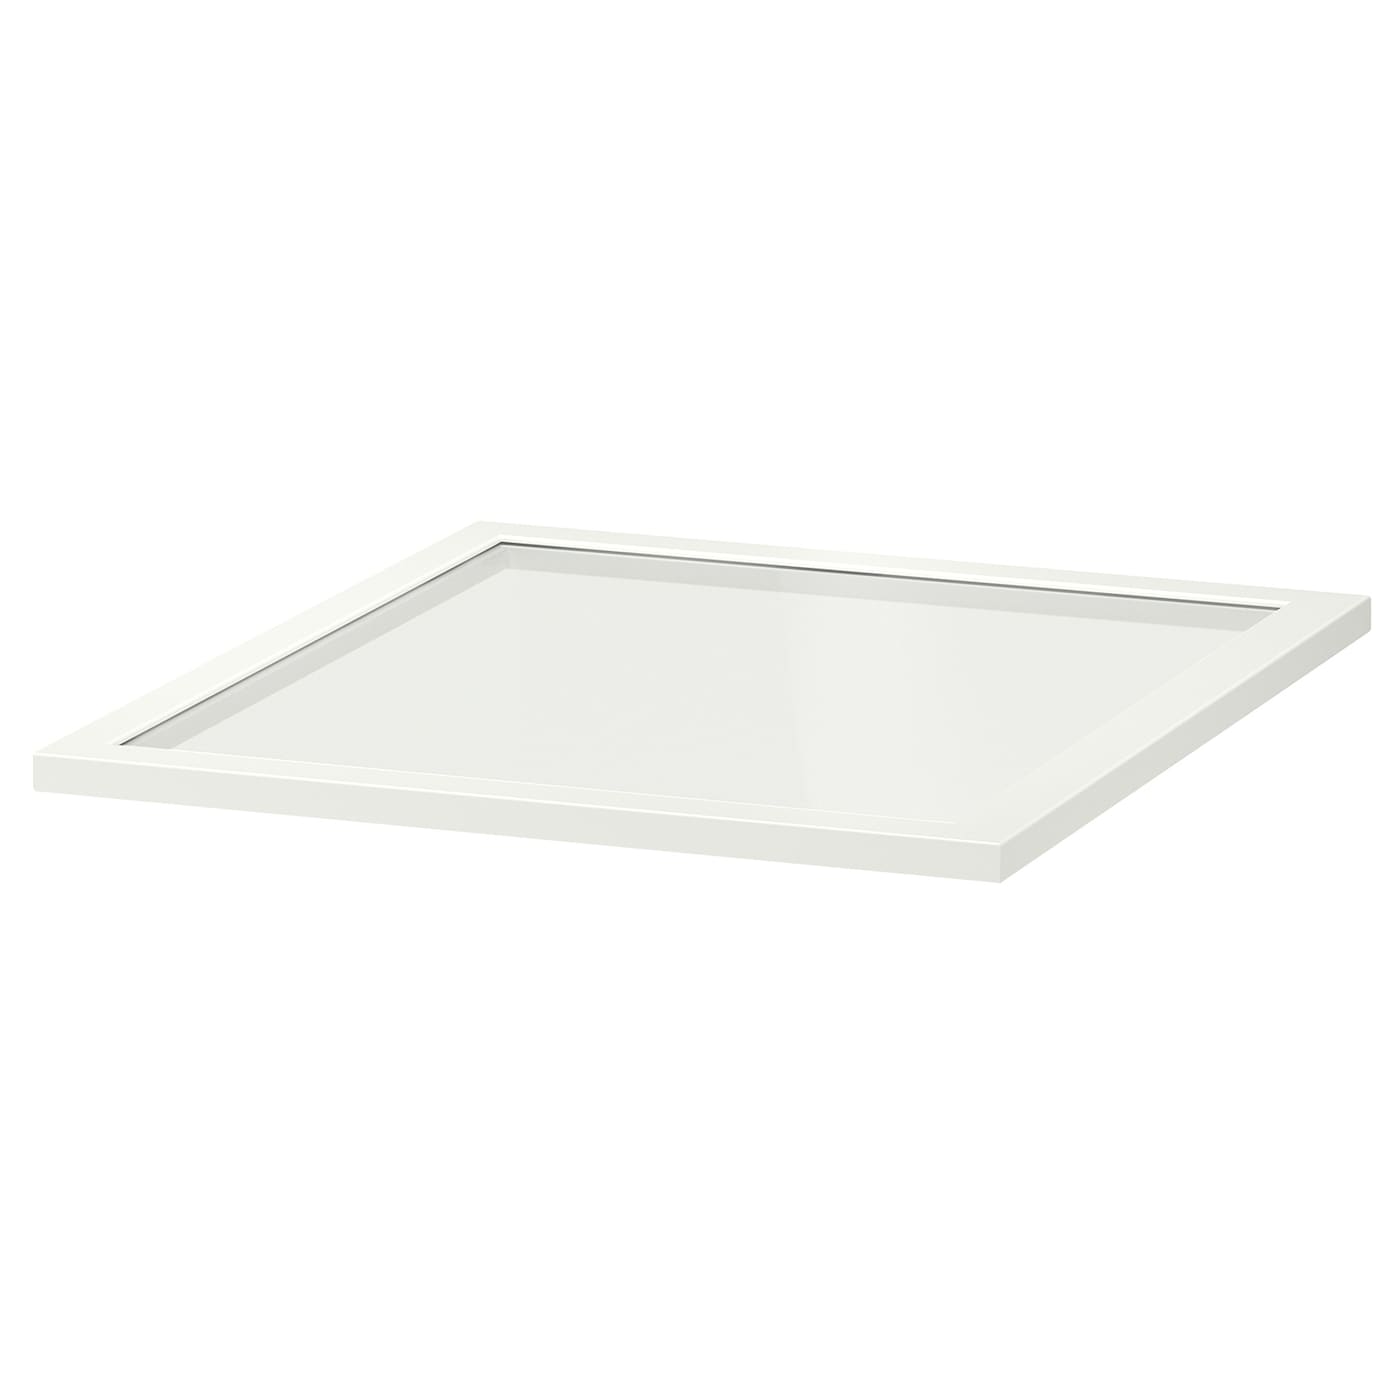 Полка стеклянная - IKEA KOMPLEMENT, 50x58 см, белый КОМПЛИМЕНТ ИКЕА